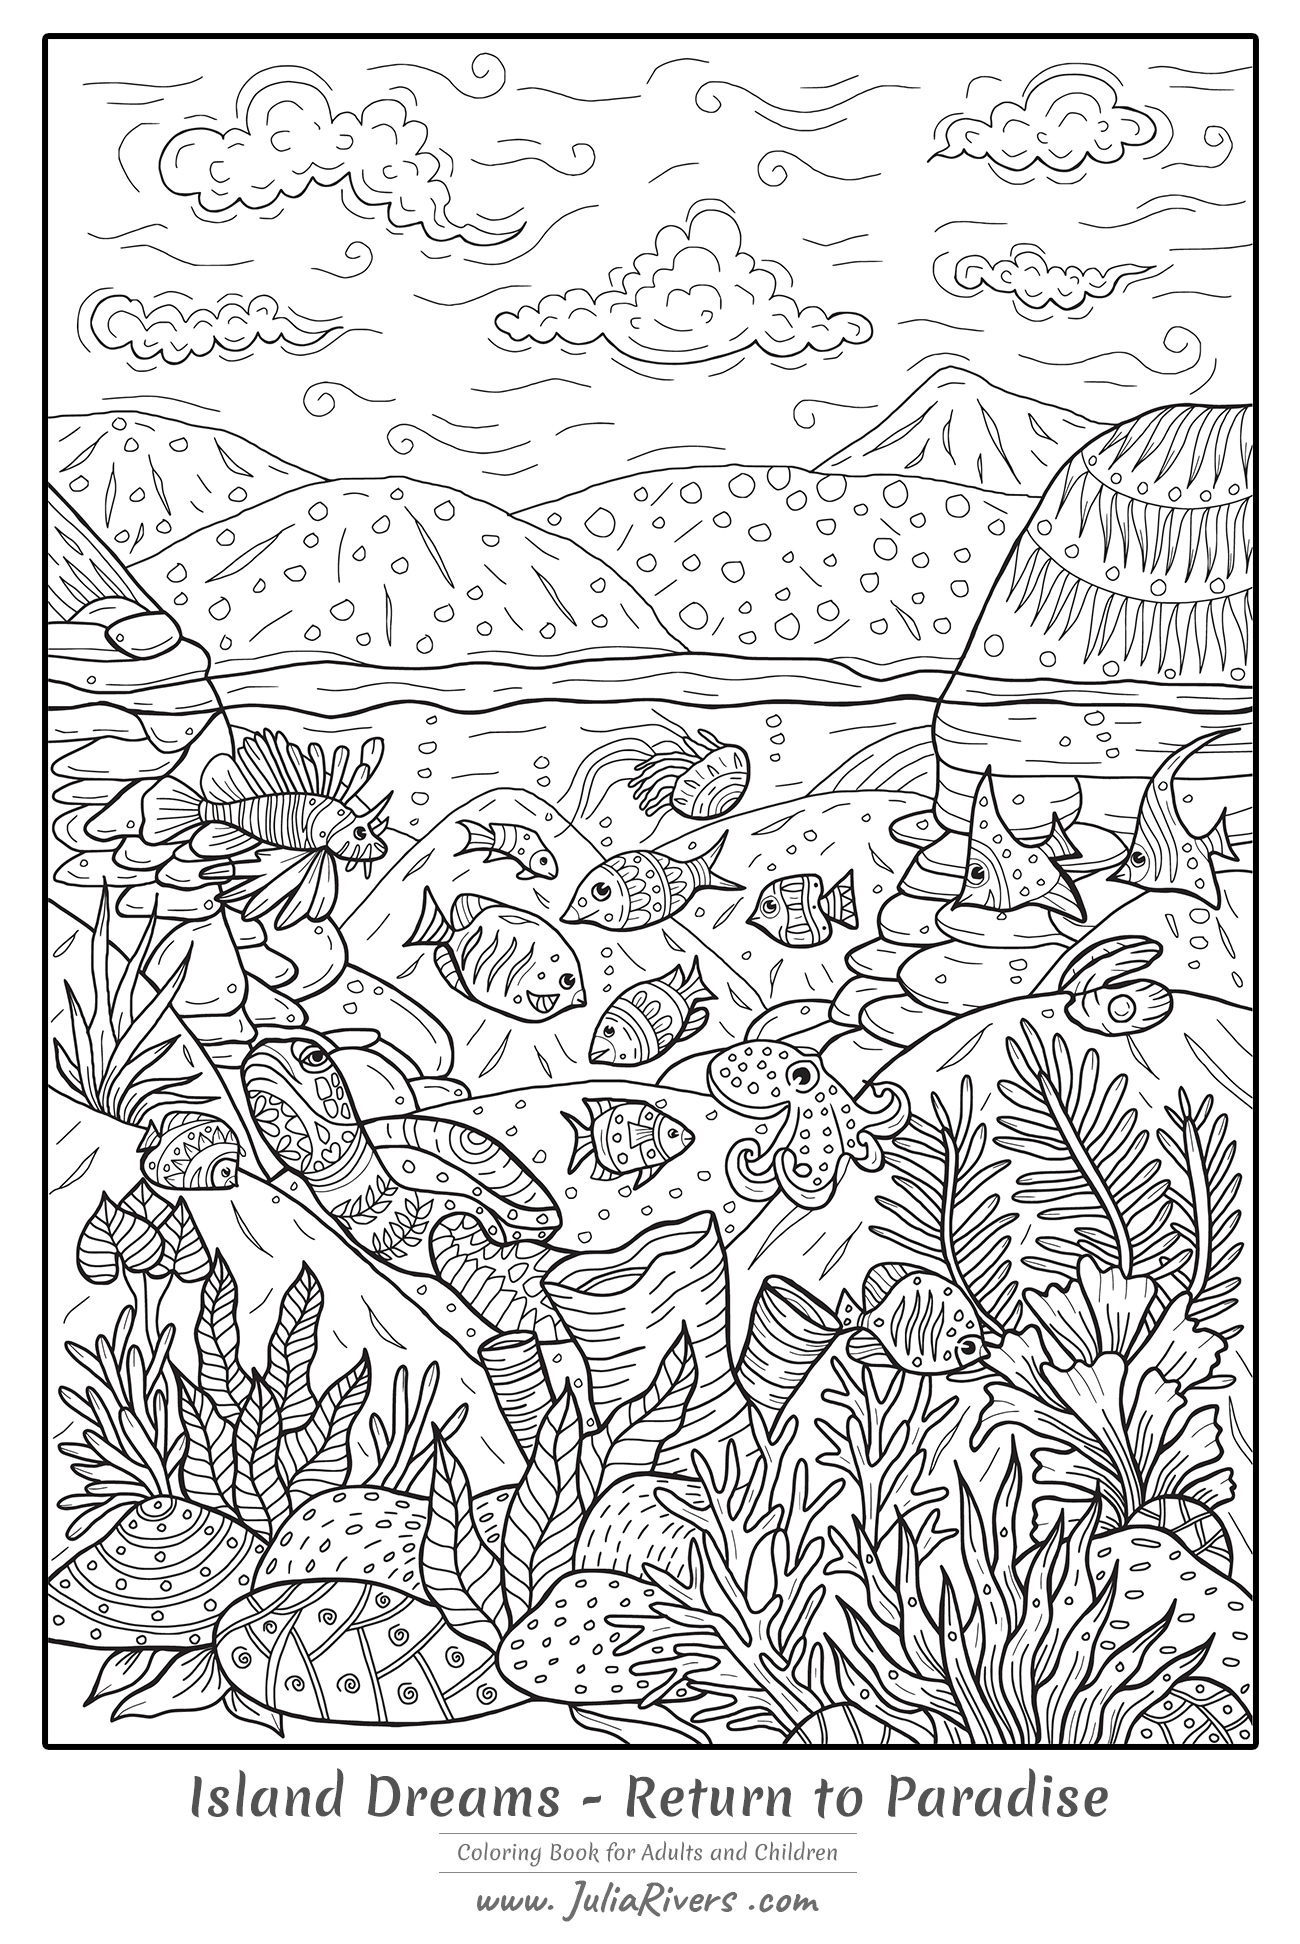 'Sonhos de ilha : Regresso ao Paraíso' : Página para colorir cheia de criaturas aquáticas e espécies vegetais ... e uma bela paisagem em fundo, Artista : Julia Rivers